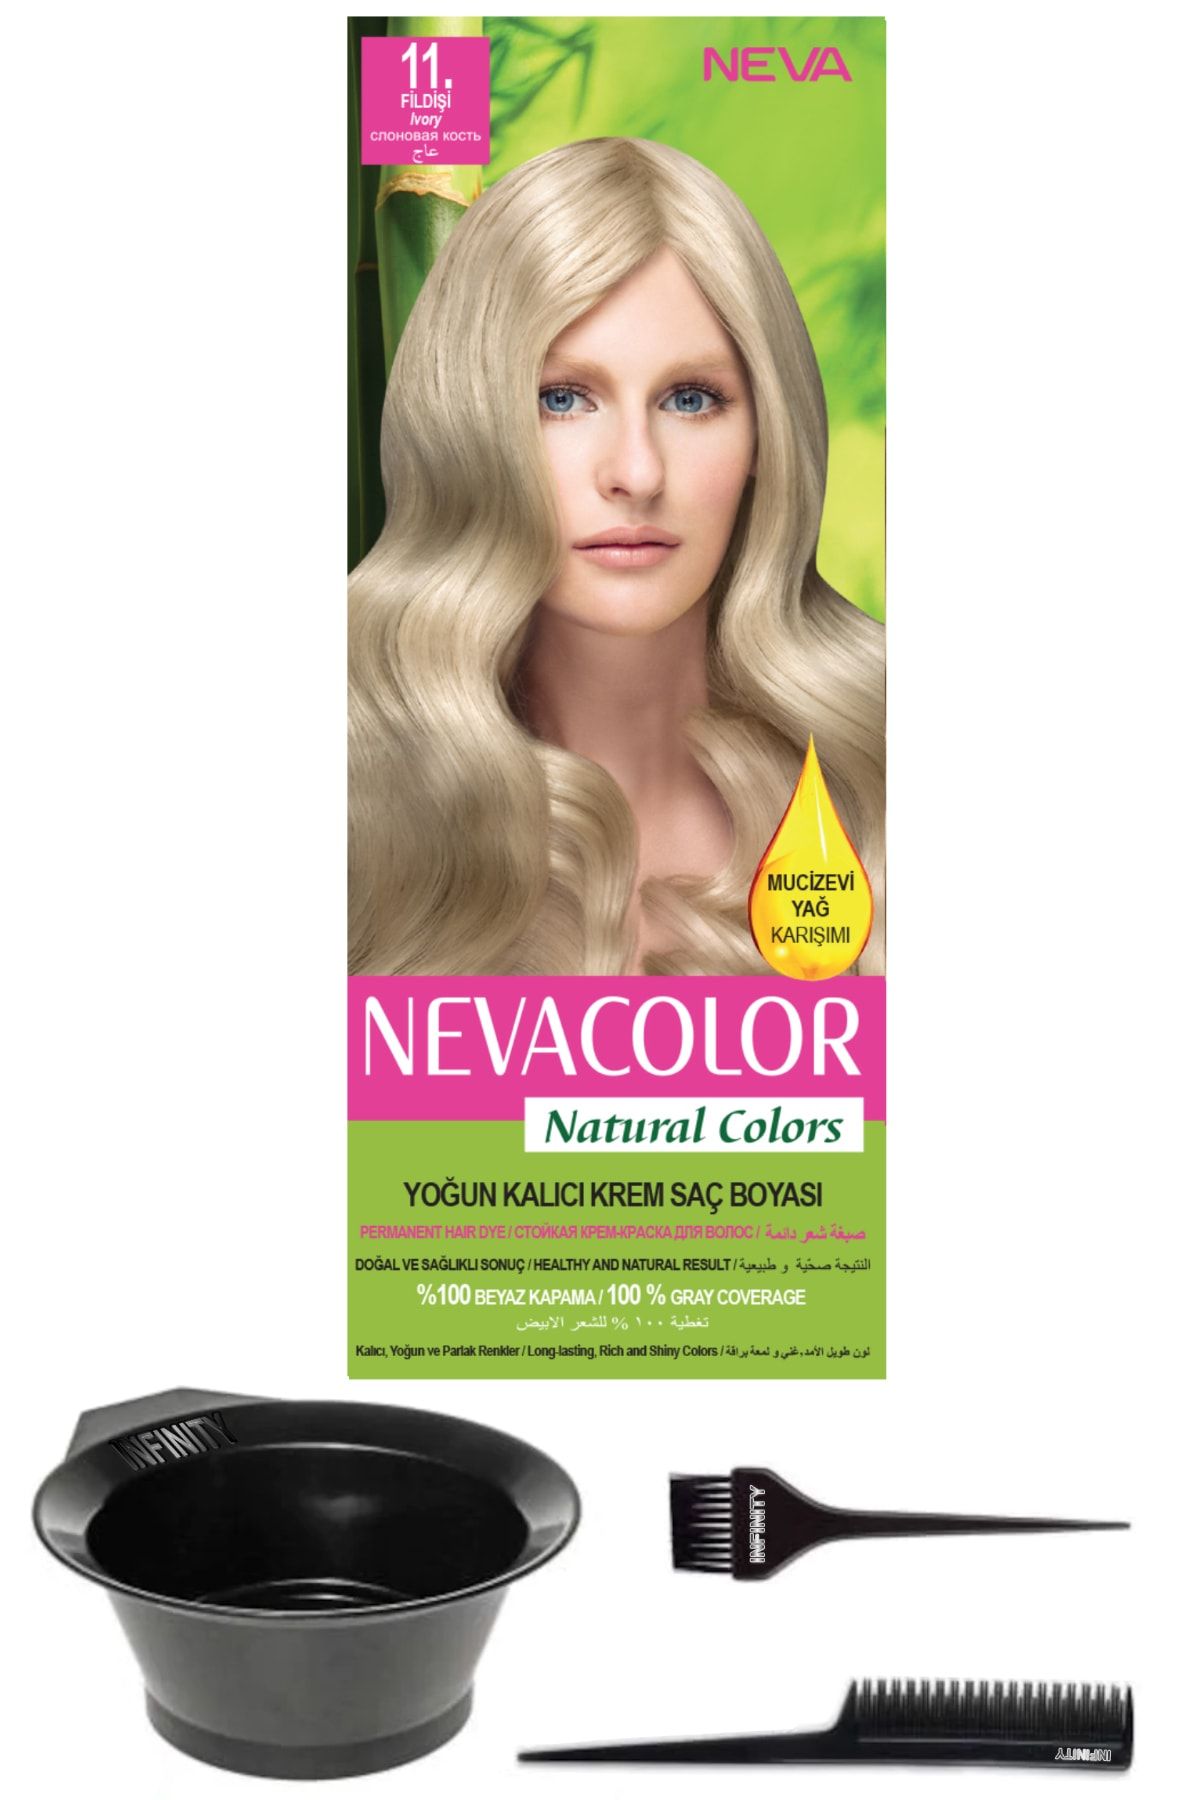 Neva Color Fildişi Kalıcı Krem Saç Boyası Ve Saç Boyama Seti Natural Colors 11